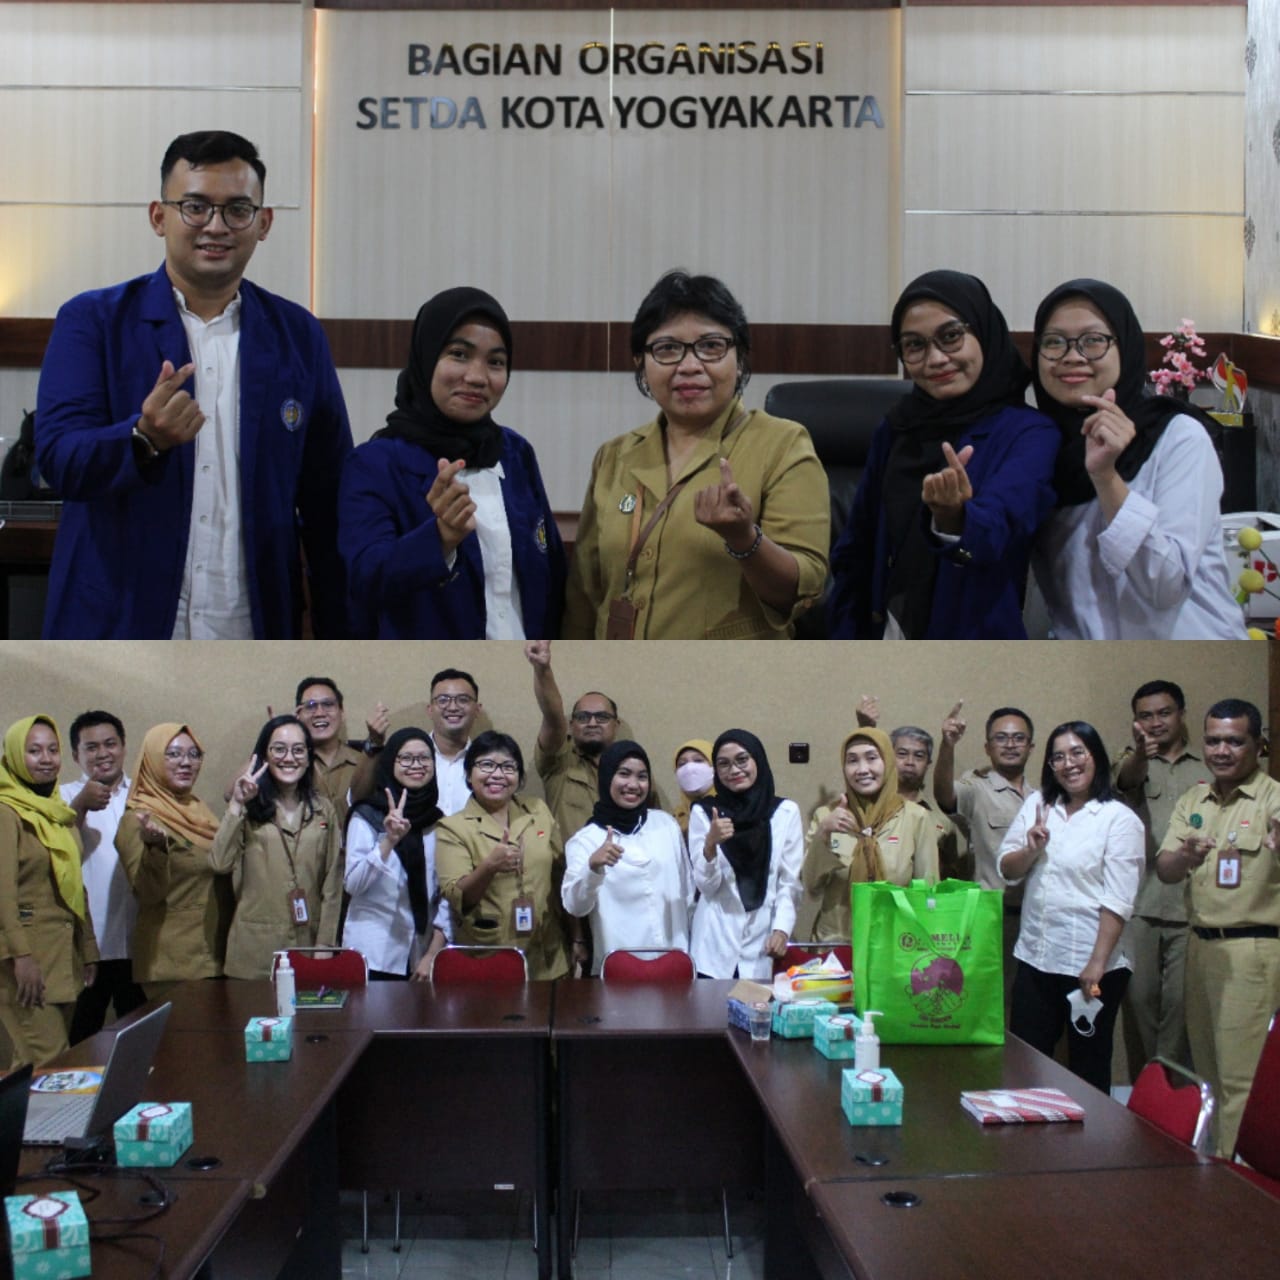 Bagian Organisasi Setda Kota Yogyakarta Lepas Mahasiswa Magang dari Kamps UNY